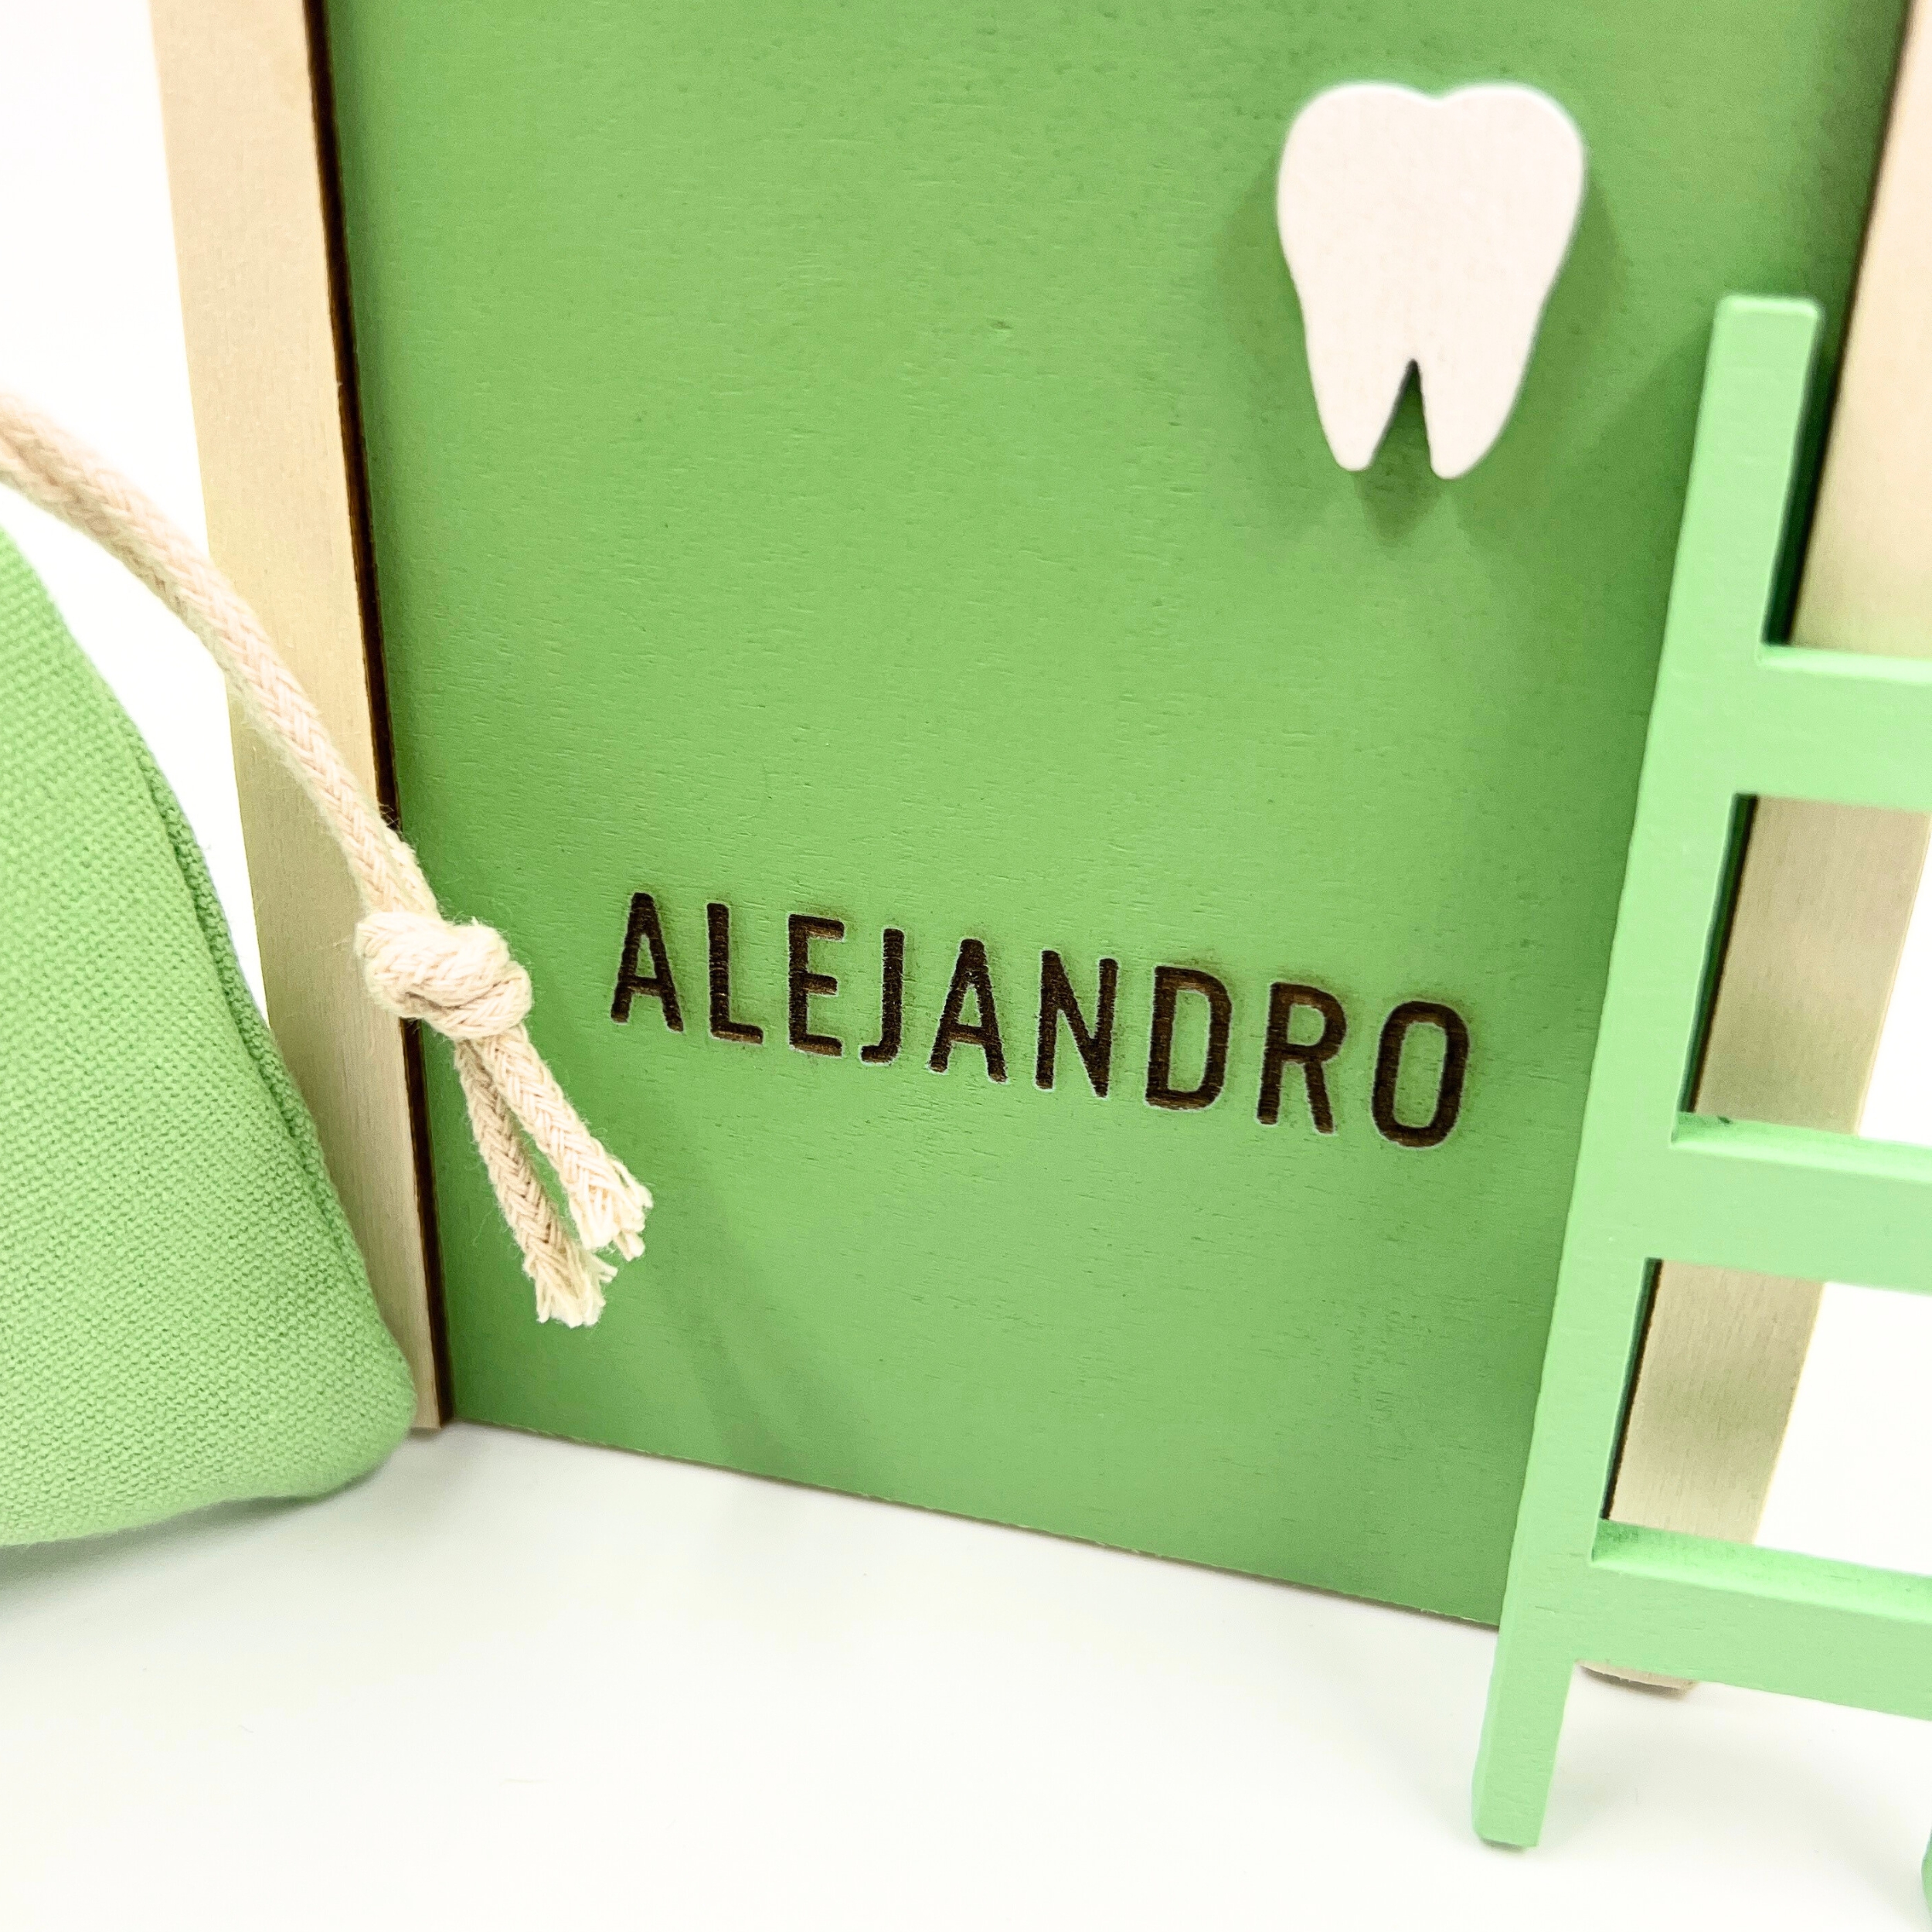 Puerta del Ratoncito Pérez, saco para dientes y escalera en color verde personalizada con el nombre de Alejandro image number null